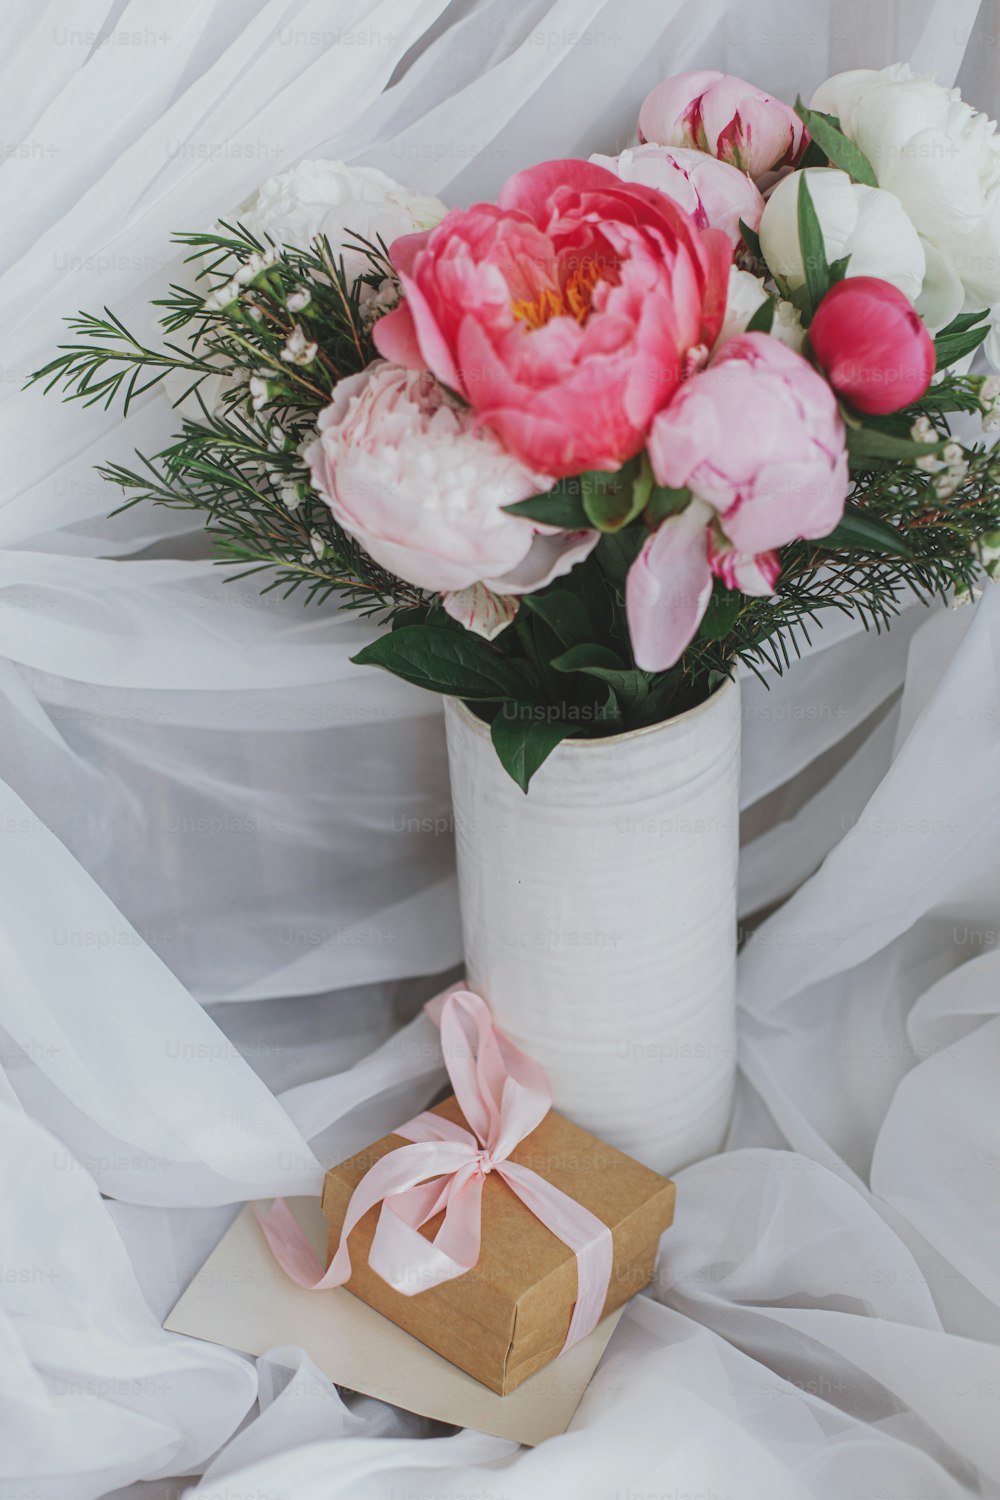 Schöne stilvolle Pfingstrosenbouquet, Geschenkbox und Grußkarte auf dem Hintergrund aus weichem weißem Stoff. Rosa und weiße Pfingstrosenblüten in Keramikvase. Alles Gute zum Muttertag. Brautvormittag